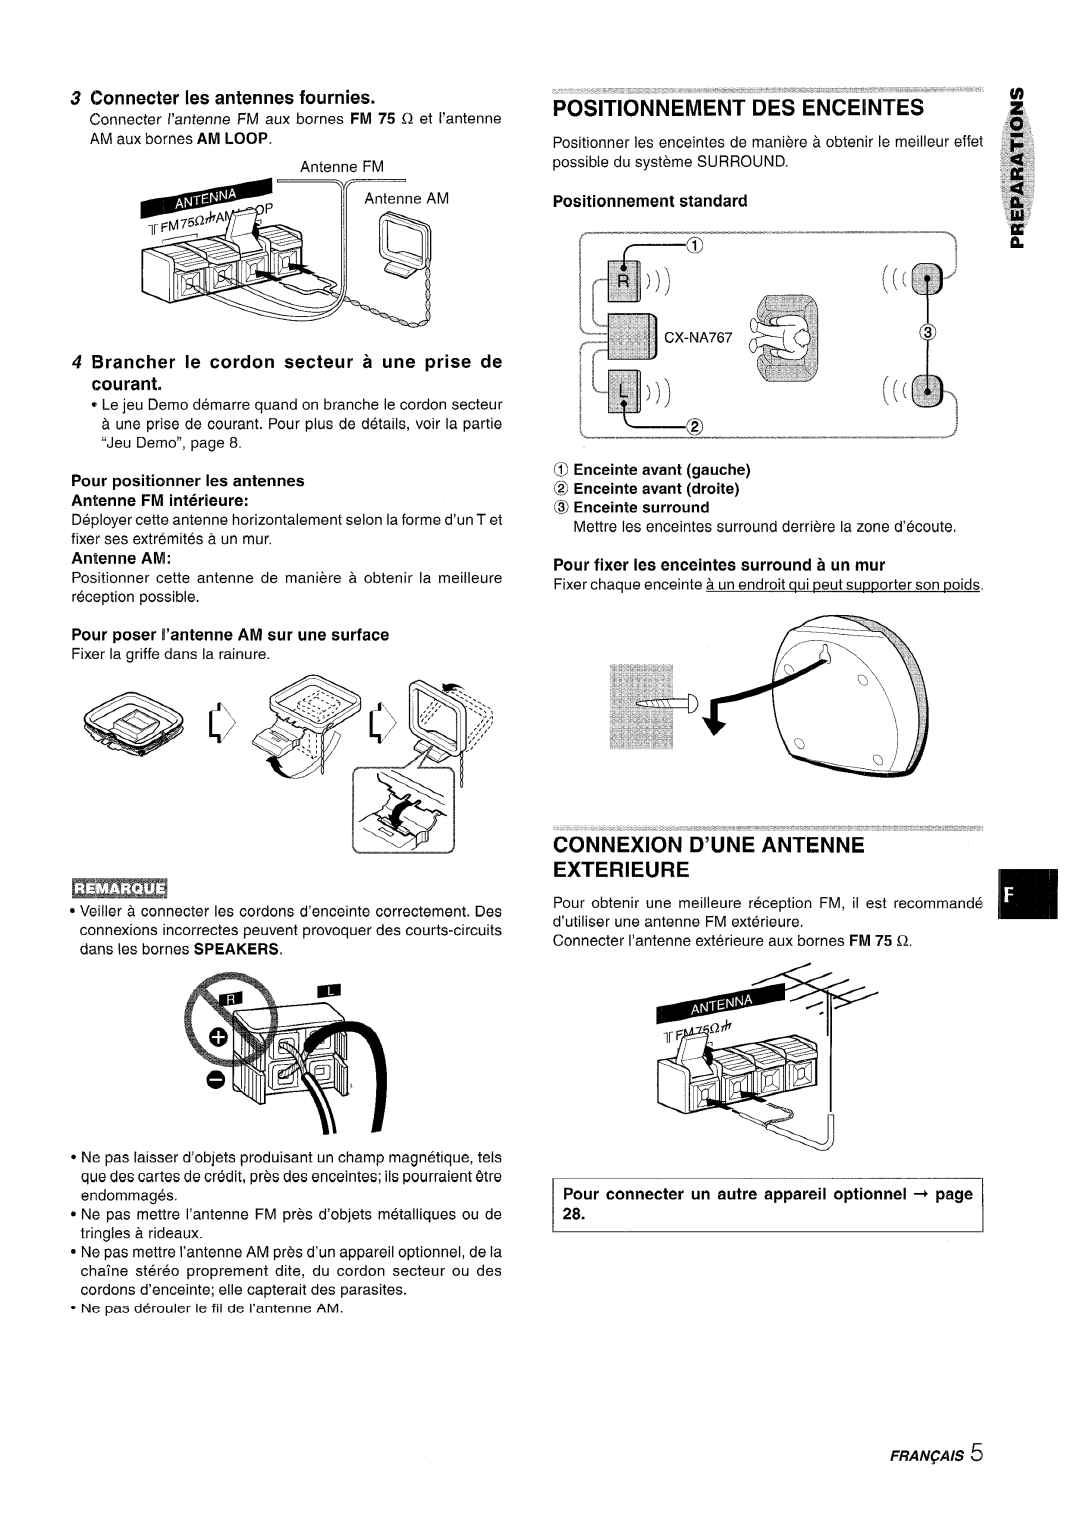 Sony NSX-A767 manual Il L---@, Connexion D’Une Antenne Exterieure, Connecter Ies antennes fournies, Positionnement standard 